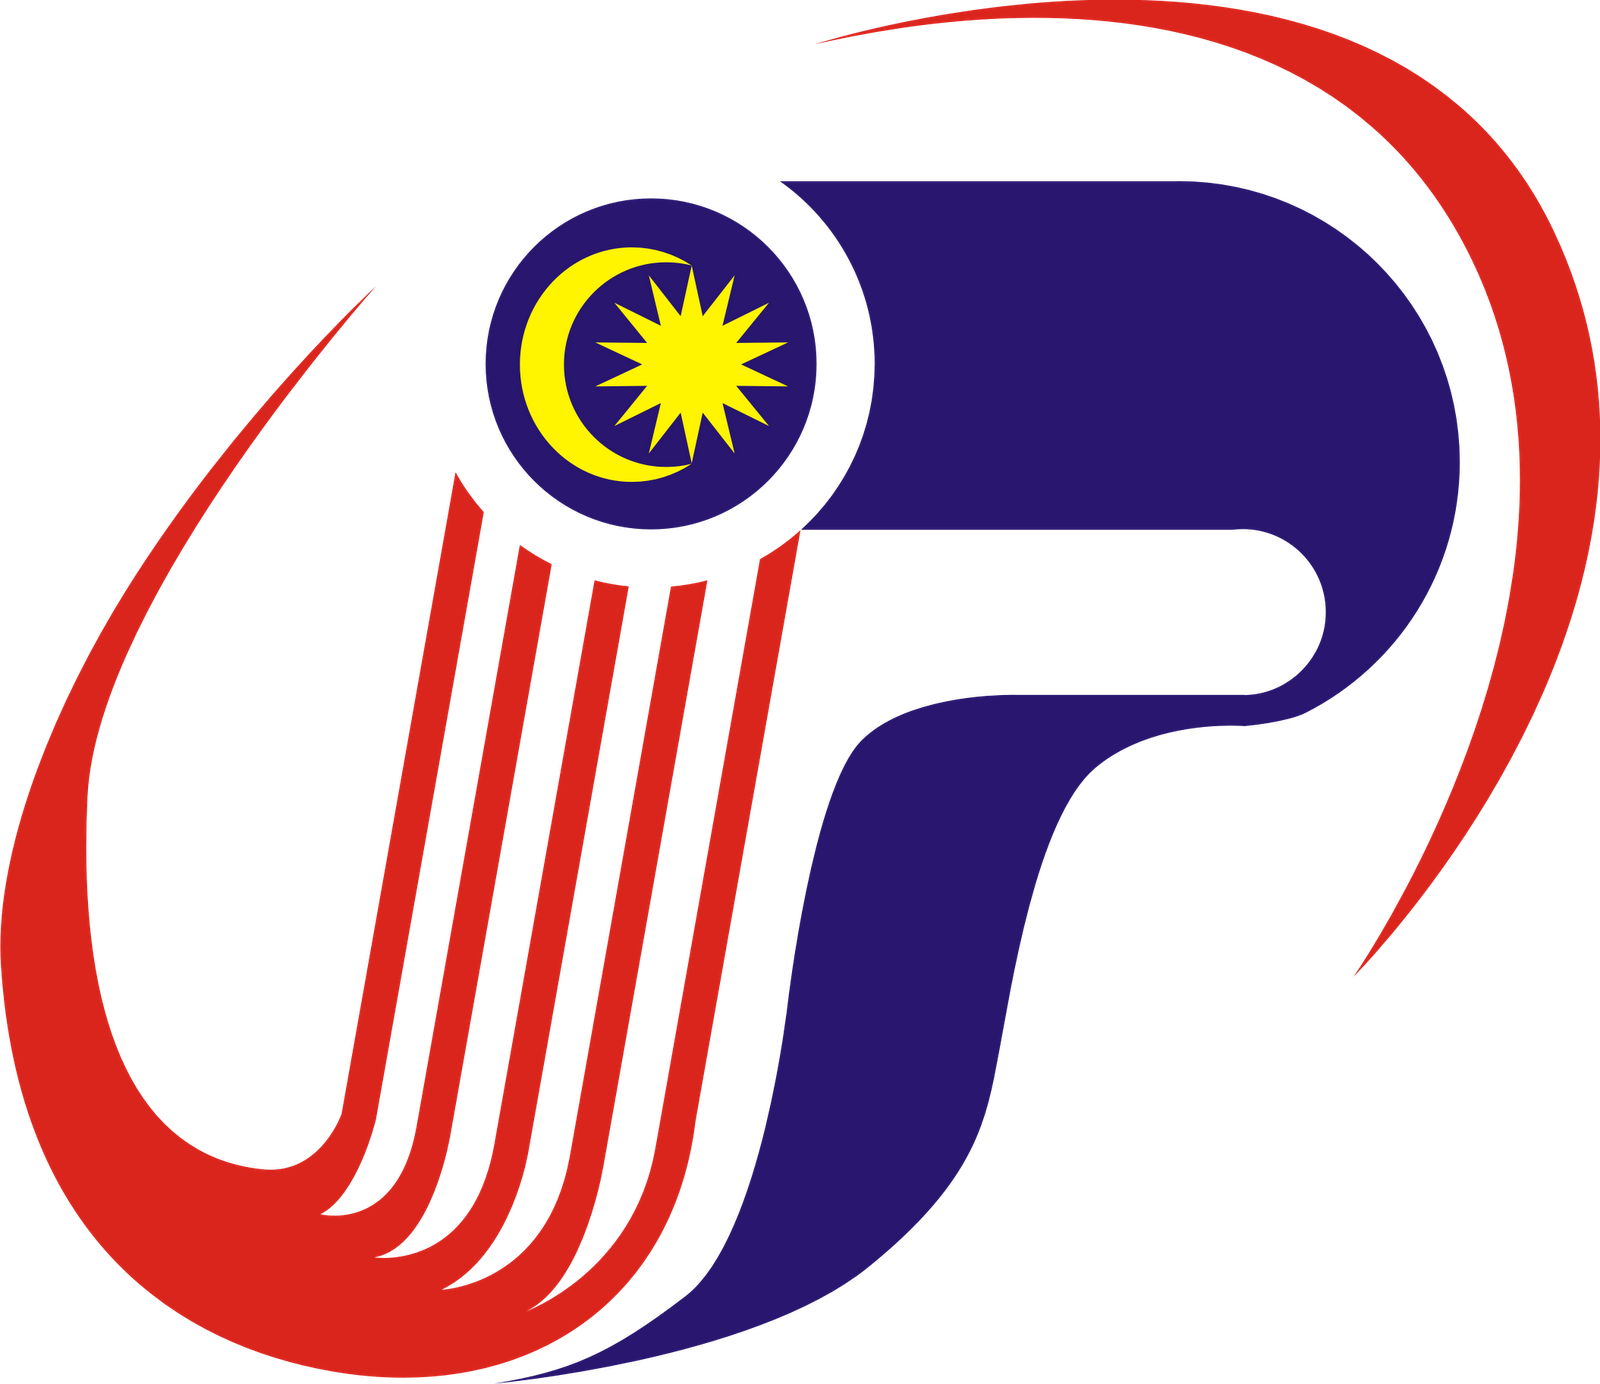 Lambang Pemerintahan di Negara malaysia - Kumpulan Logo ...